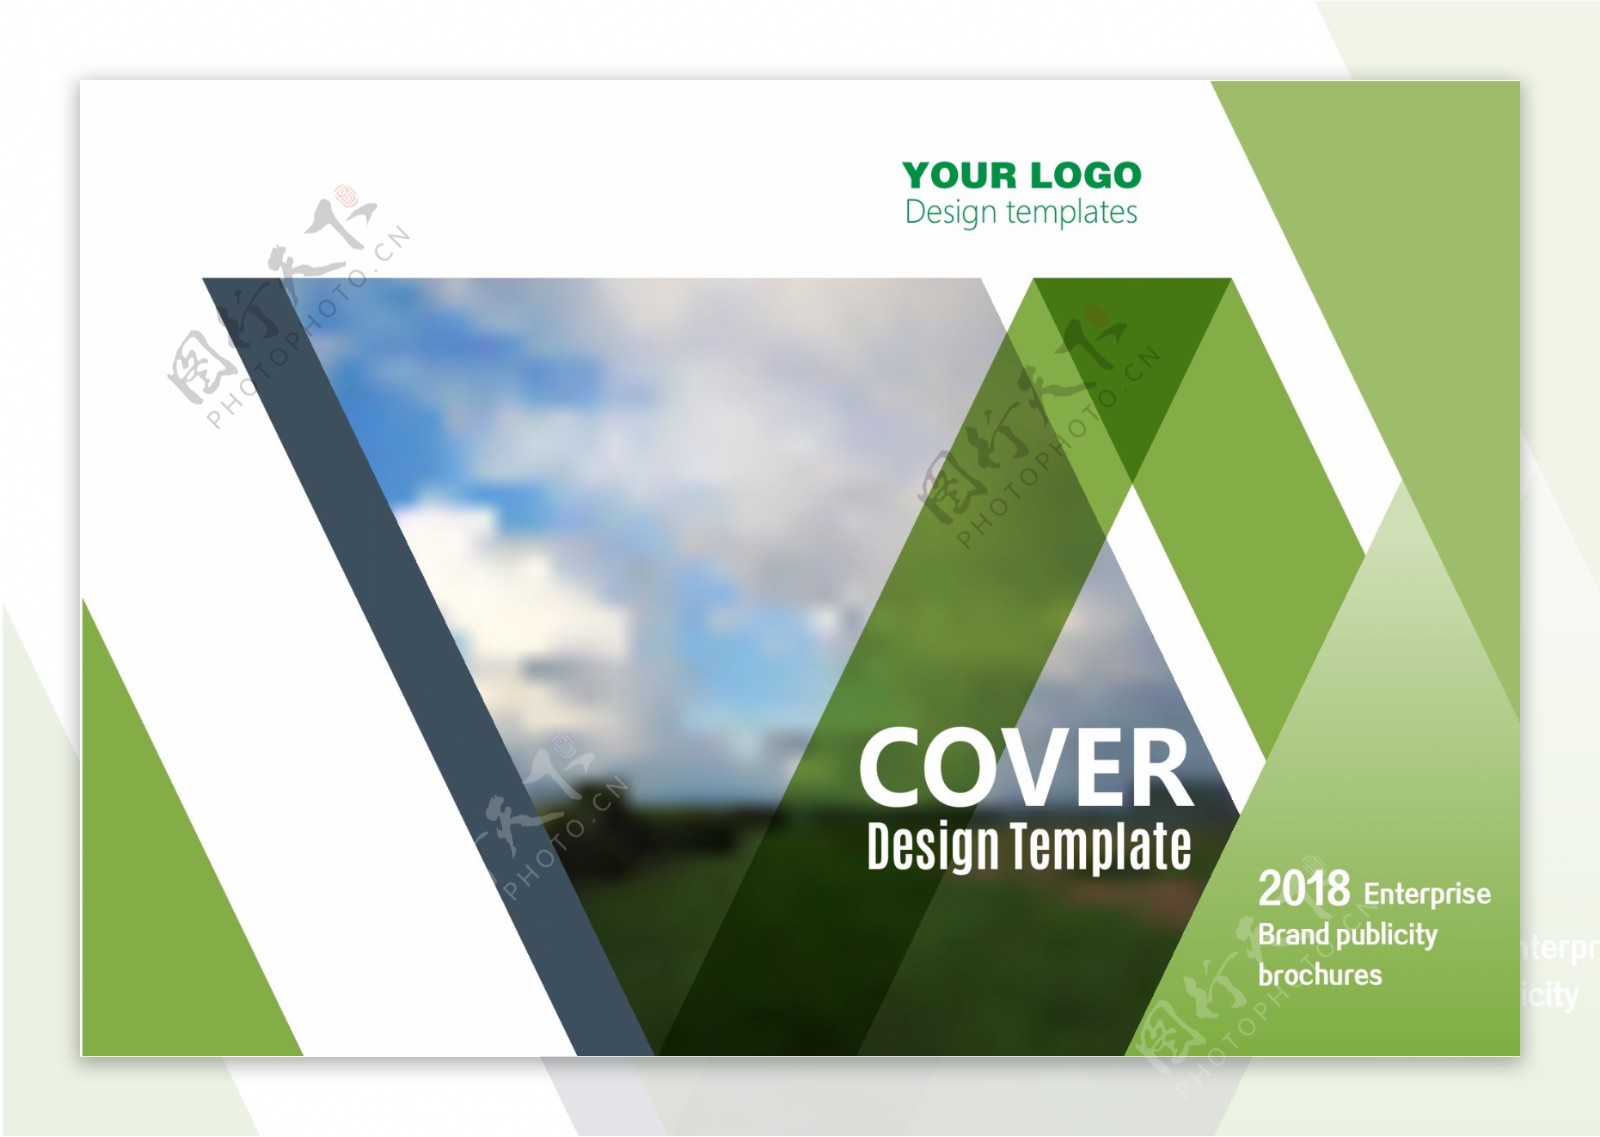 绿色科技时尚通用企业宣传画册封面设计